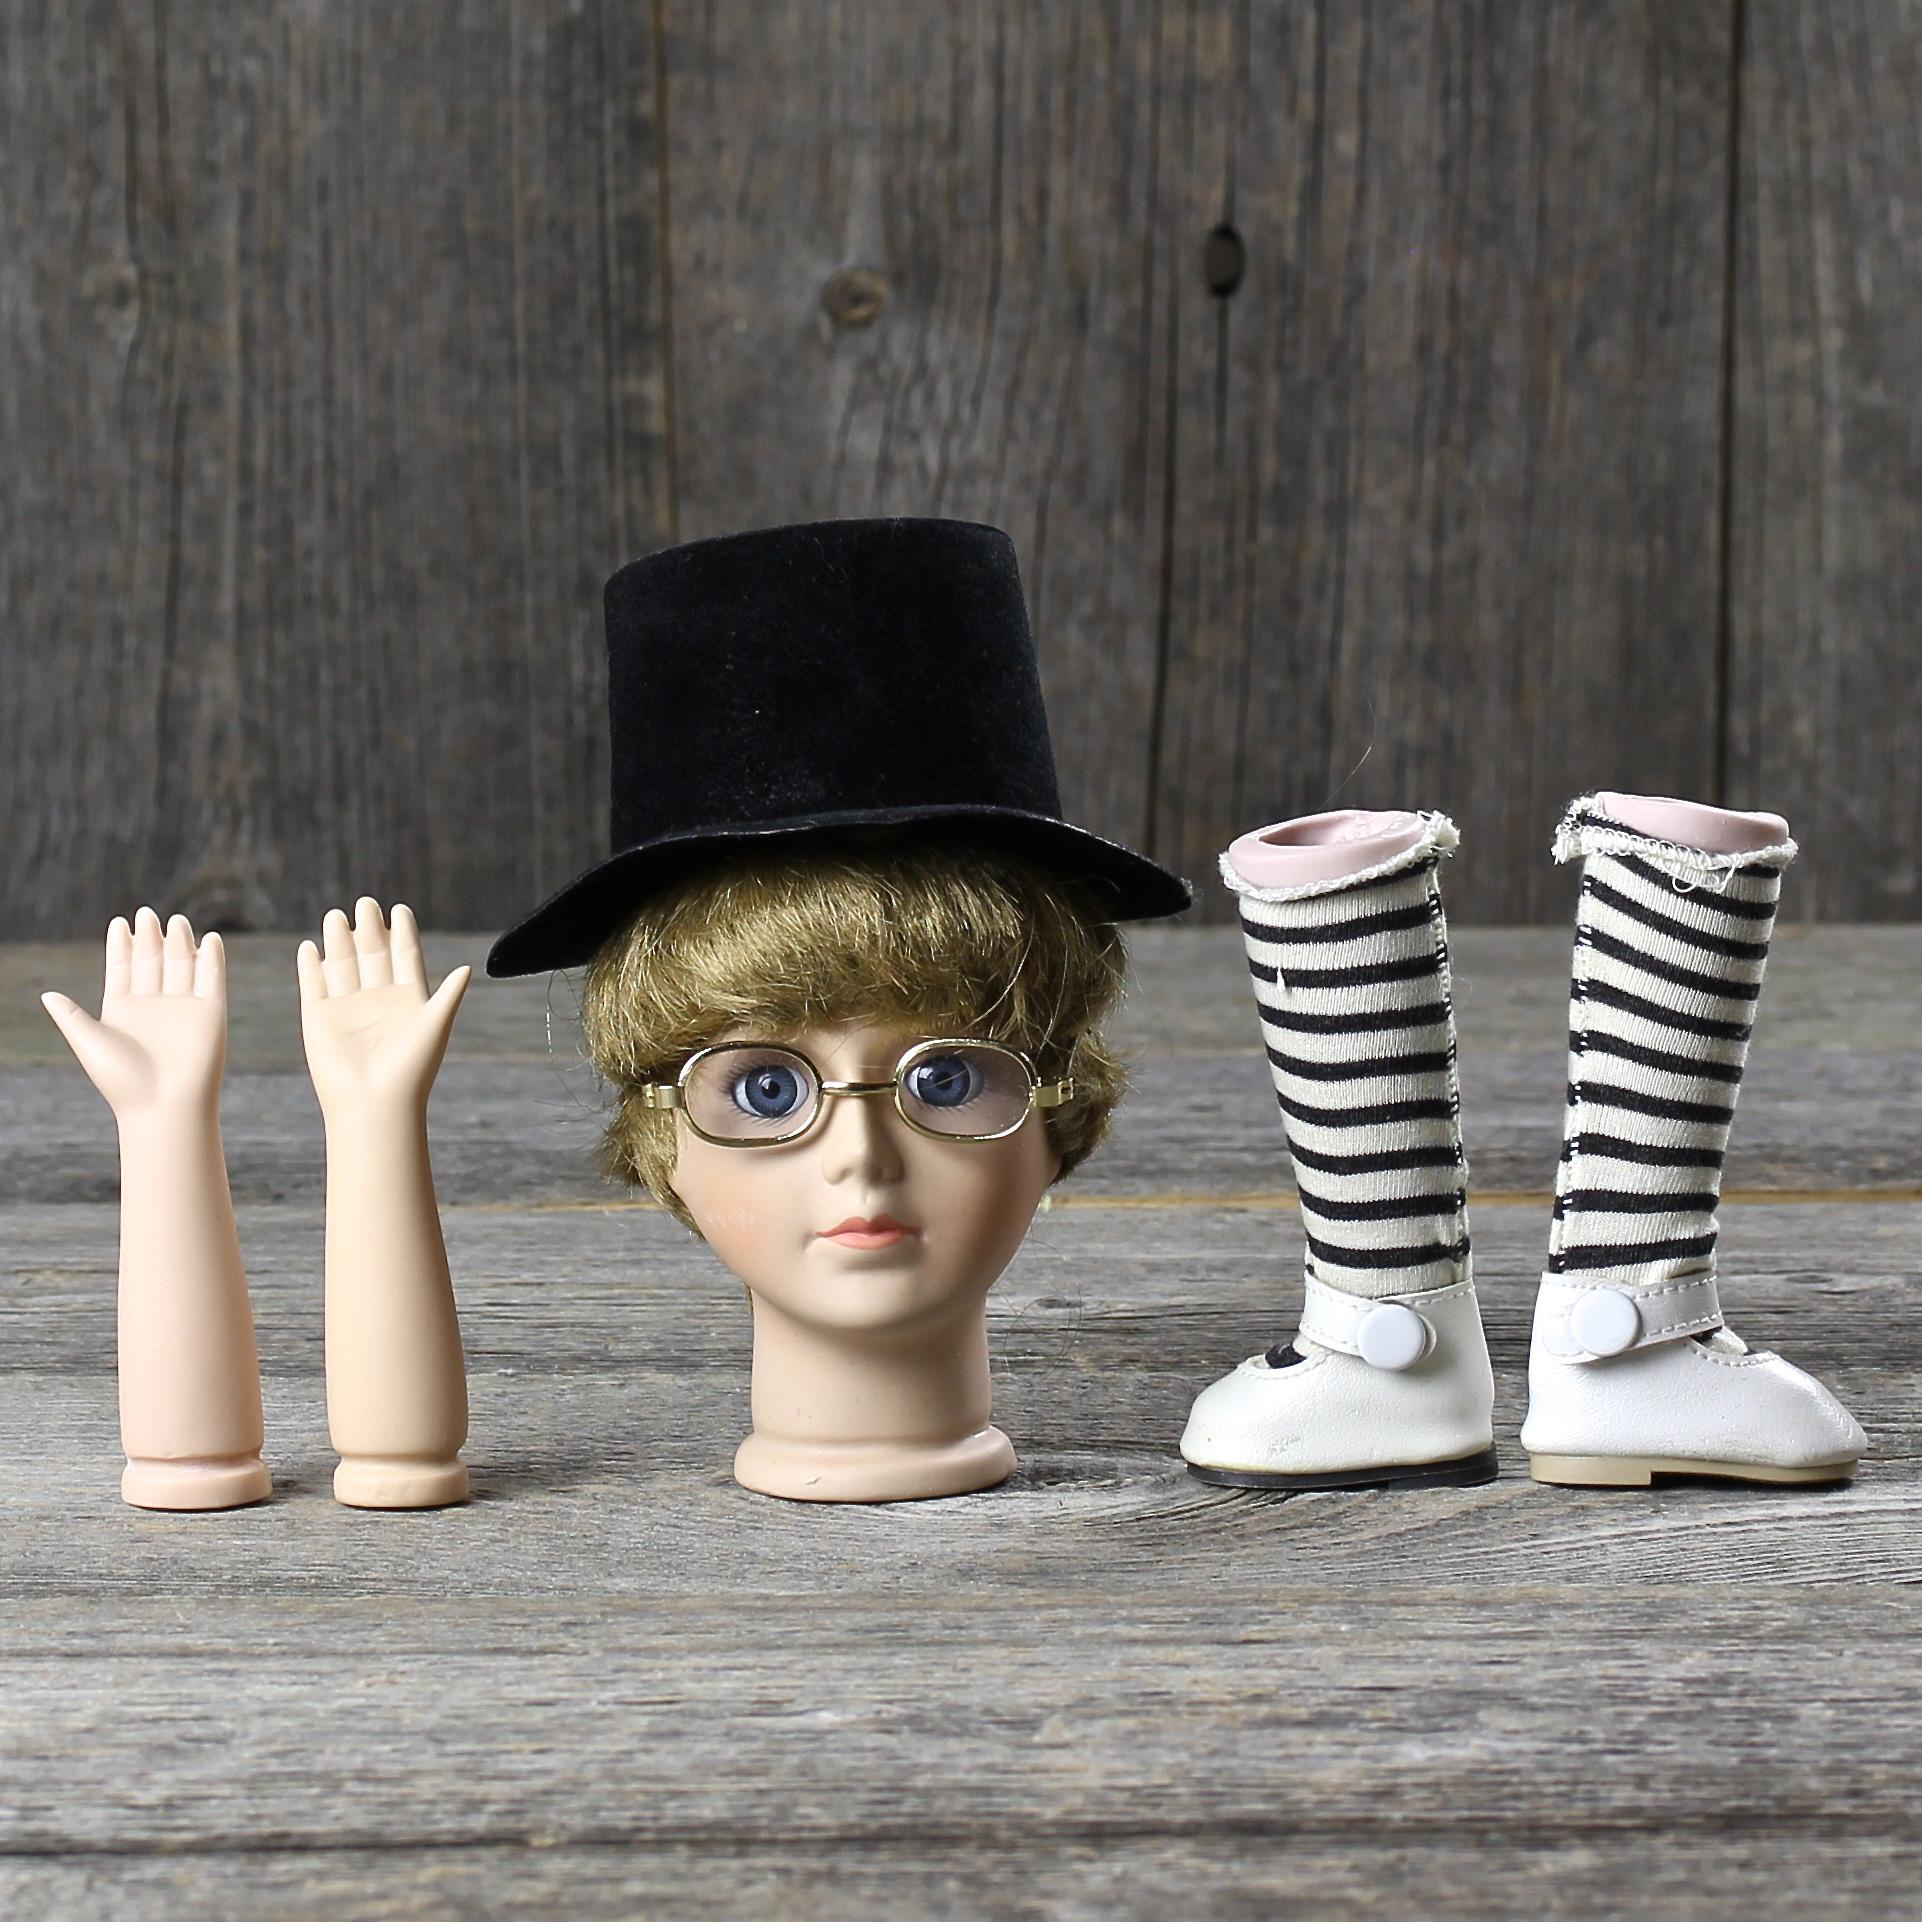 Винтажные детали для куклы с лондонского блошиного рынка Фарфоровая голова, руки, ножки в туфельках и полосатых чулках, шляпка, очки